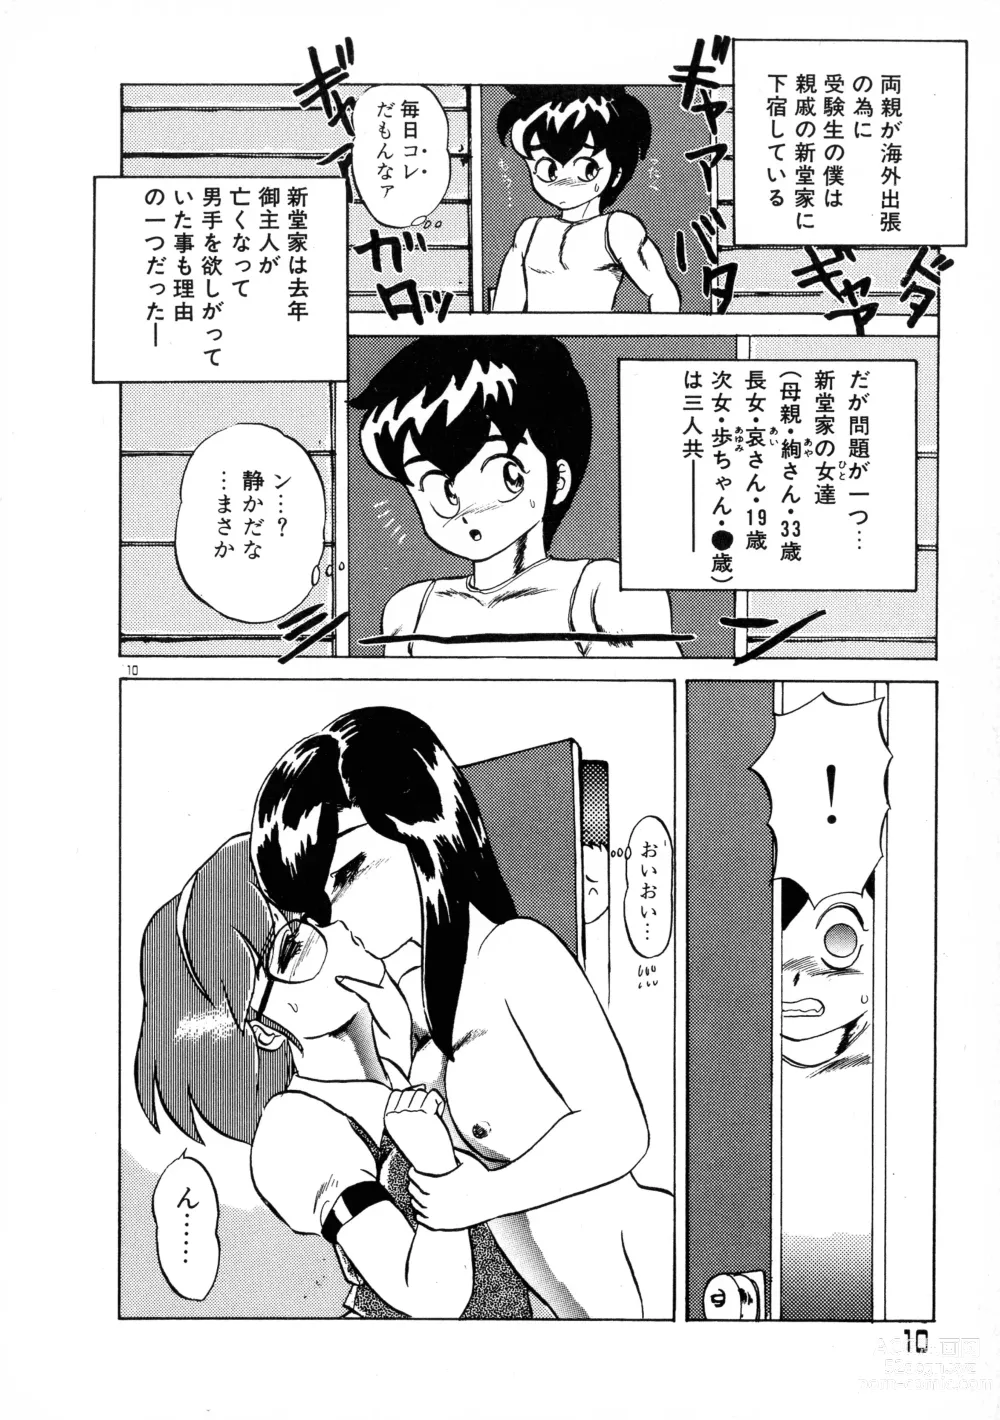 Page 10 of manga Akai Miwaku